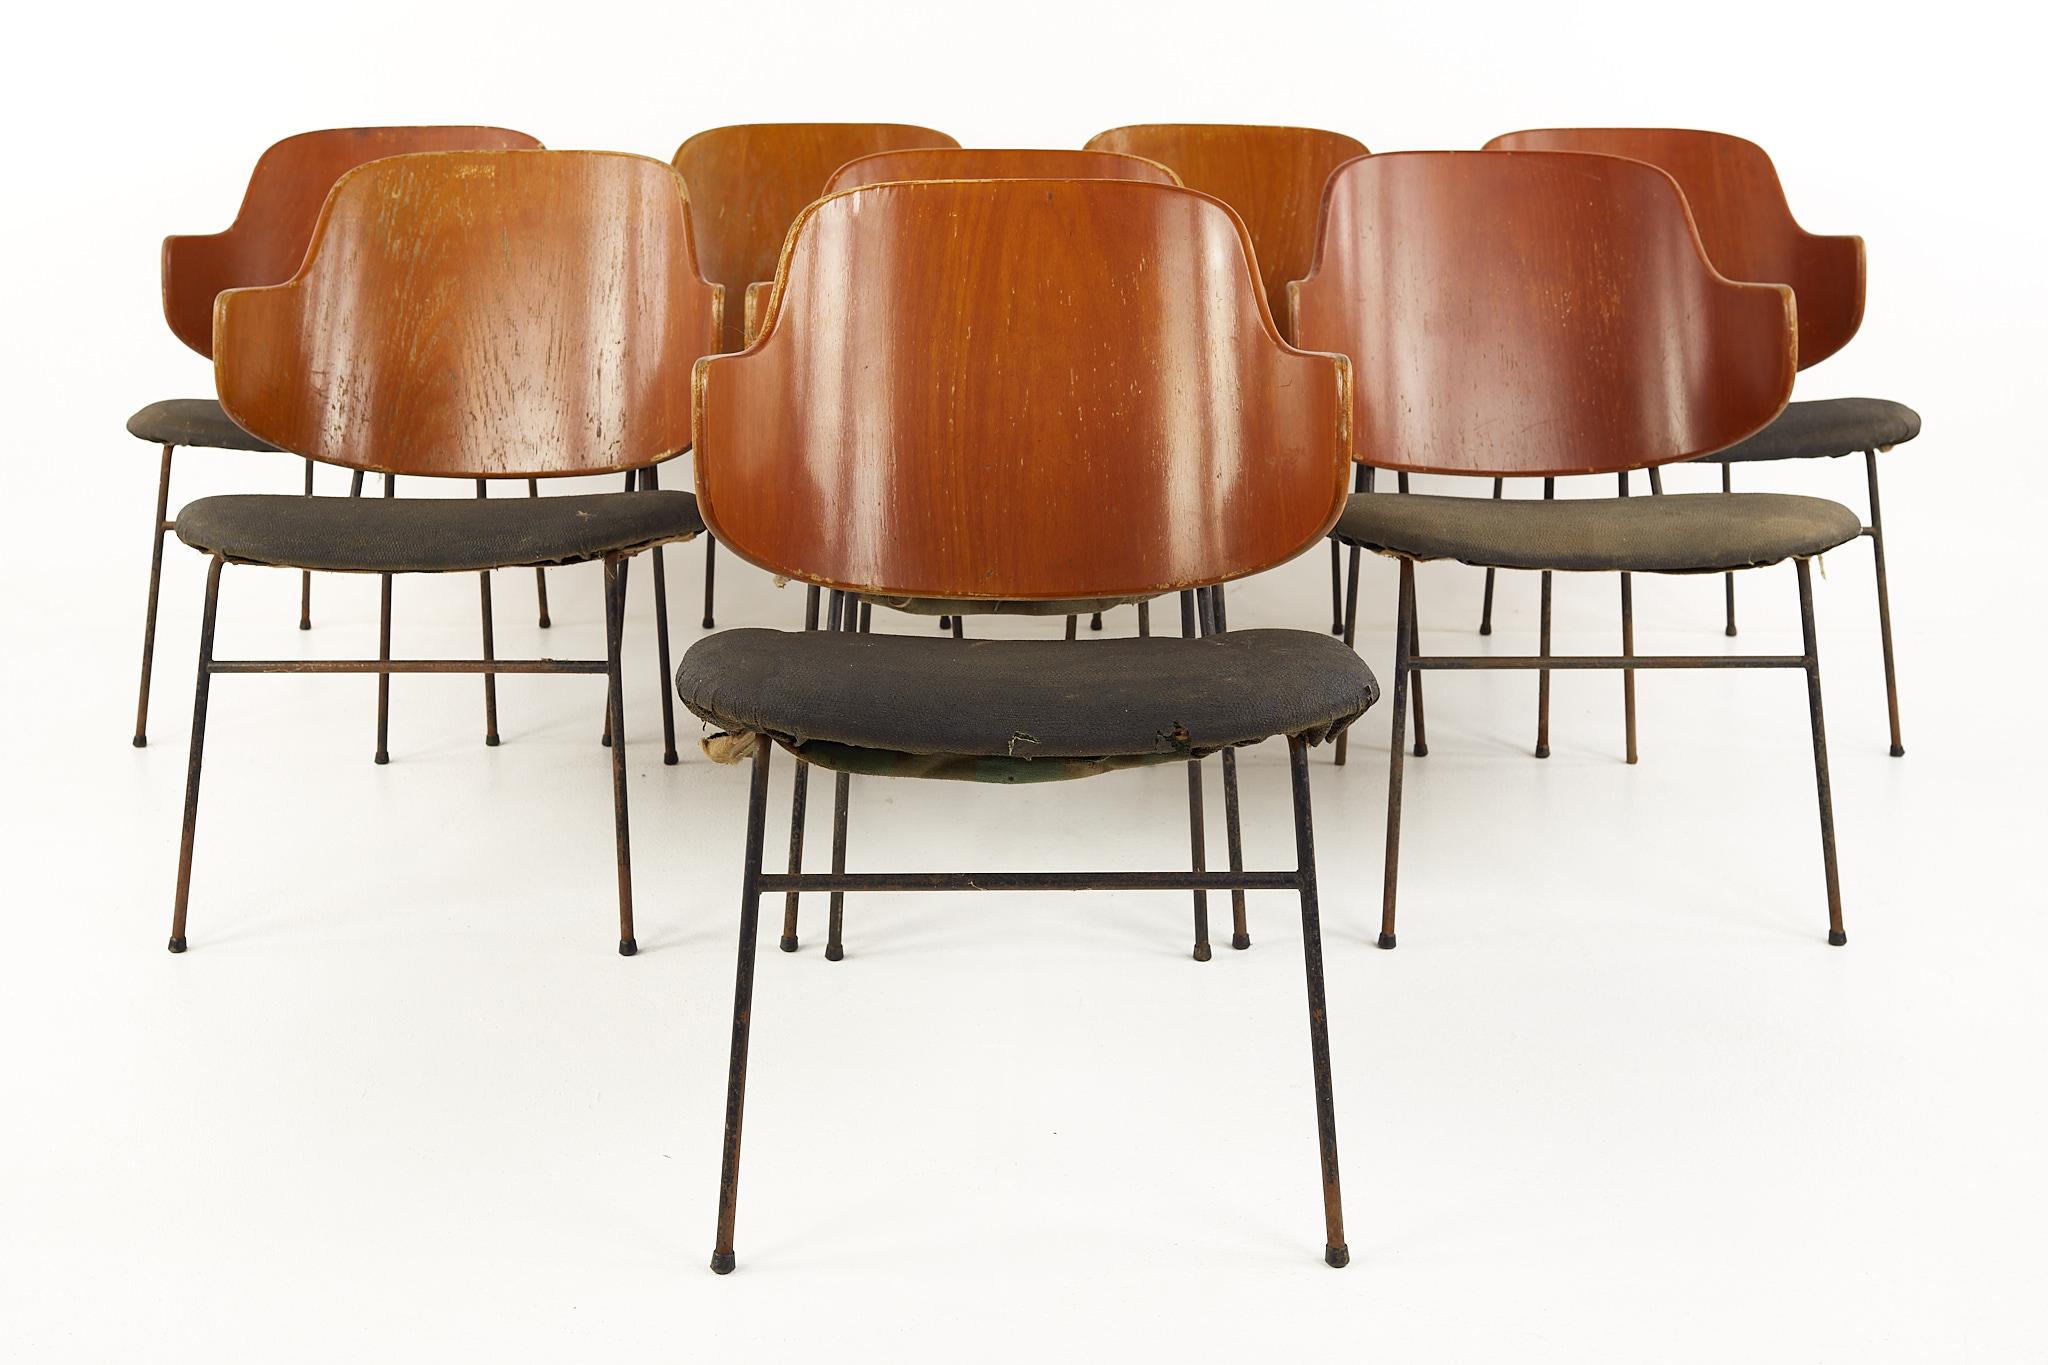 Chaises de salle à manger Kofod Larsen en fer forgé et en contreplaqué plié, datant du milieu du siècle dernier - Lot de 8

Chaque chaise mesure : 20.5 de large x 24 de profond x 28.75 de haut, avec une hauteur d'assise de 16 pouces

Prêt pour